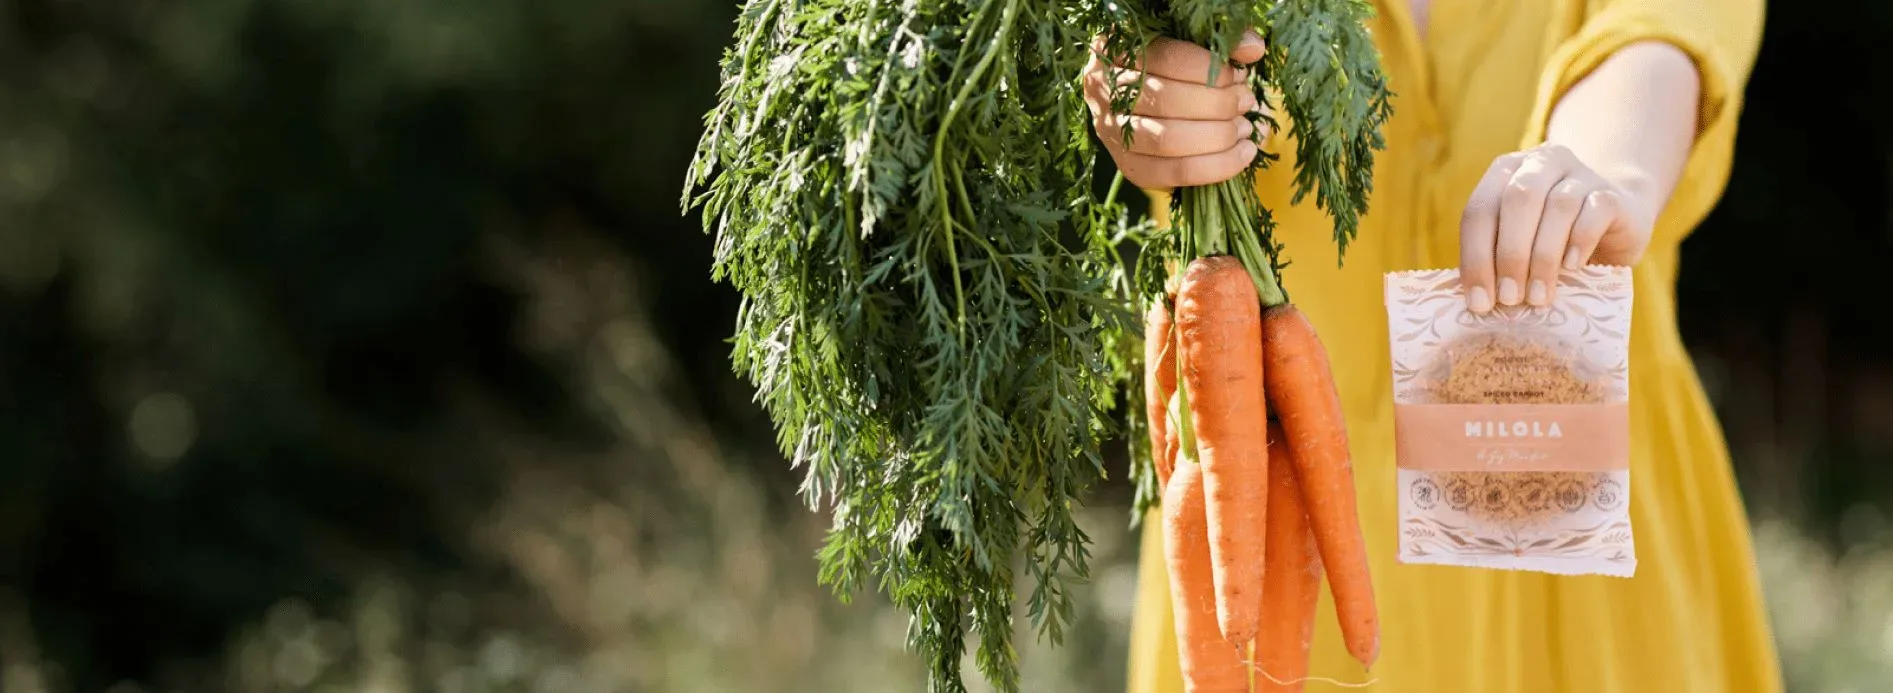 foto-apaisada-de-niña-sosteniendo-manojo-de-zanahorias-y-galleta-de-zanahoria-especiada-milola-gluten-free